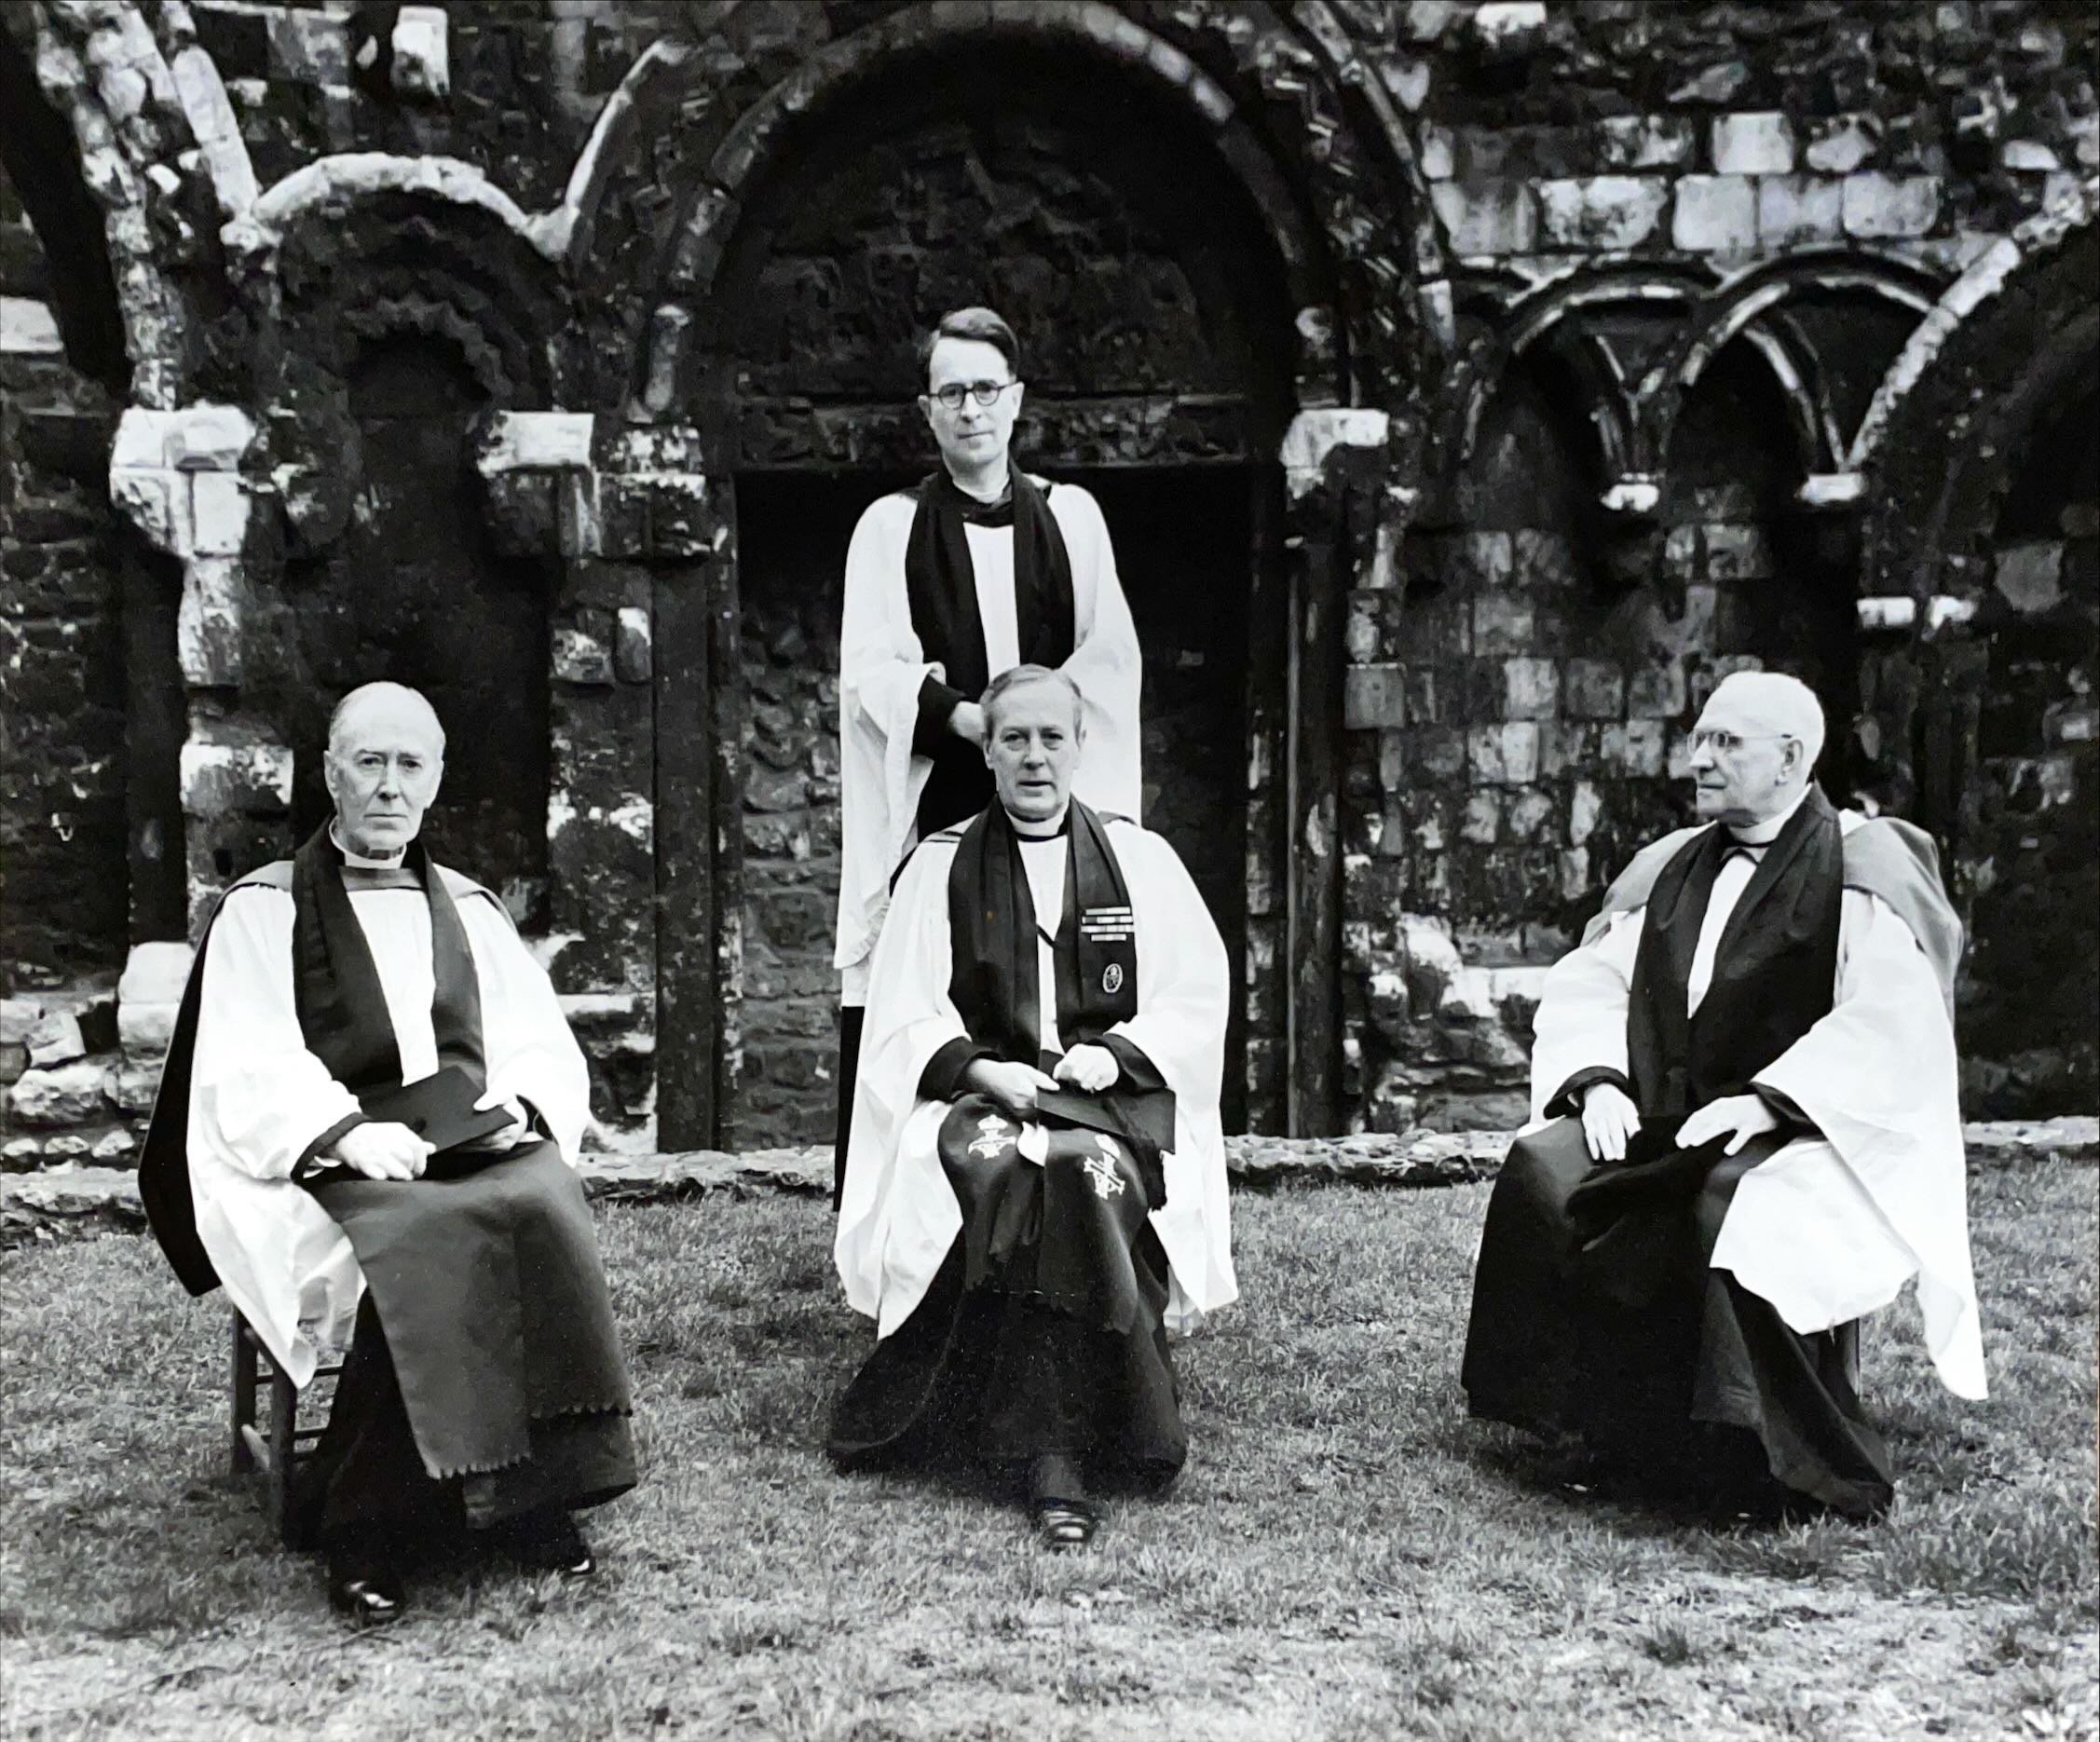 Canon Mackean, Dean Crick and Professor Finigan(?), 1950